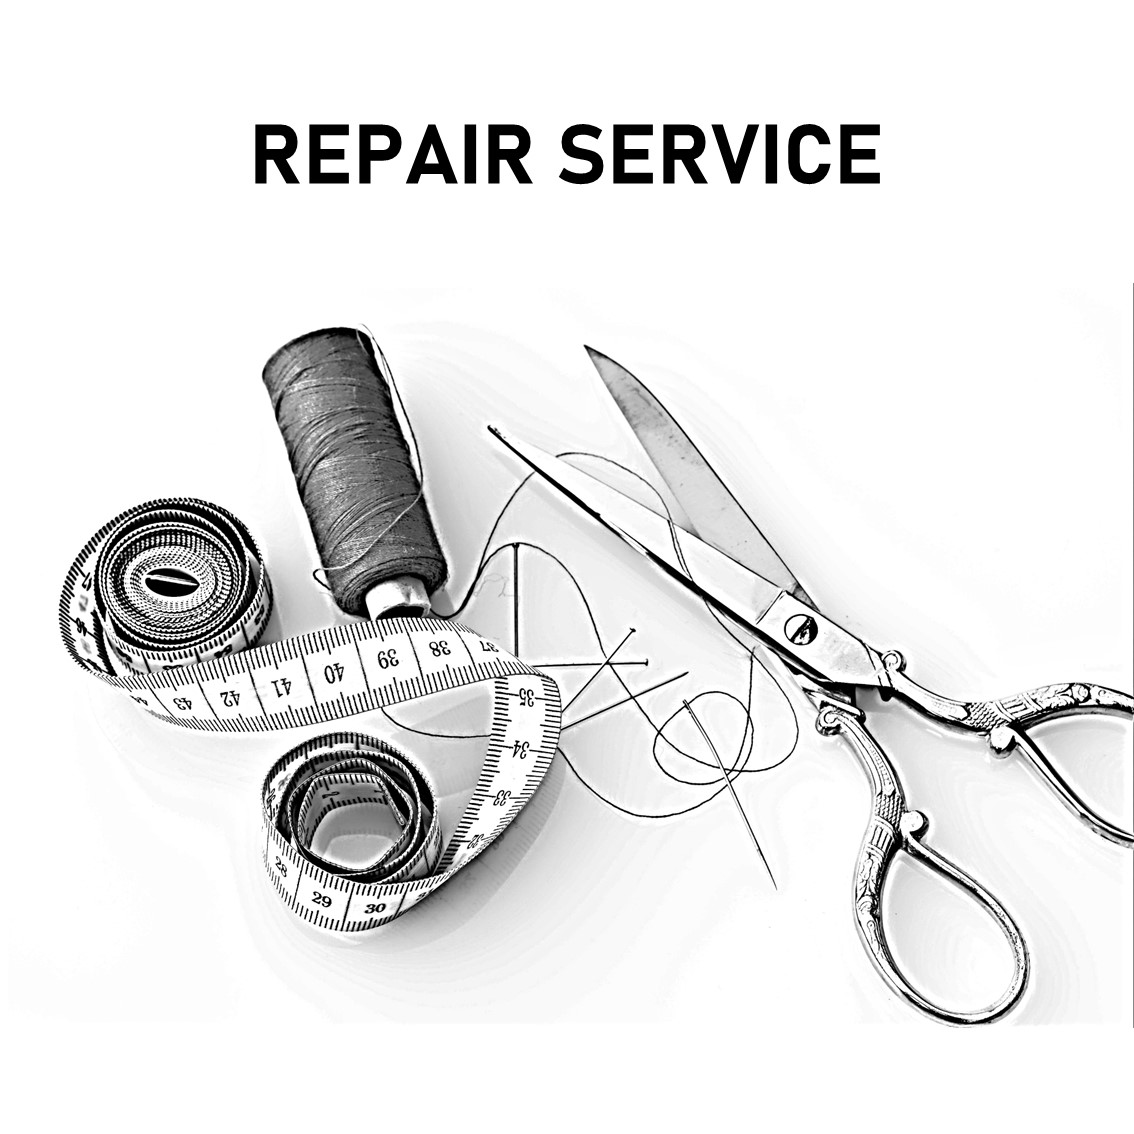 Repair Service